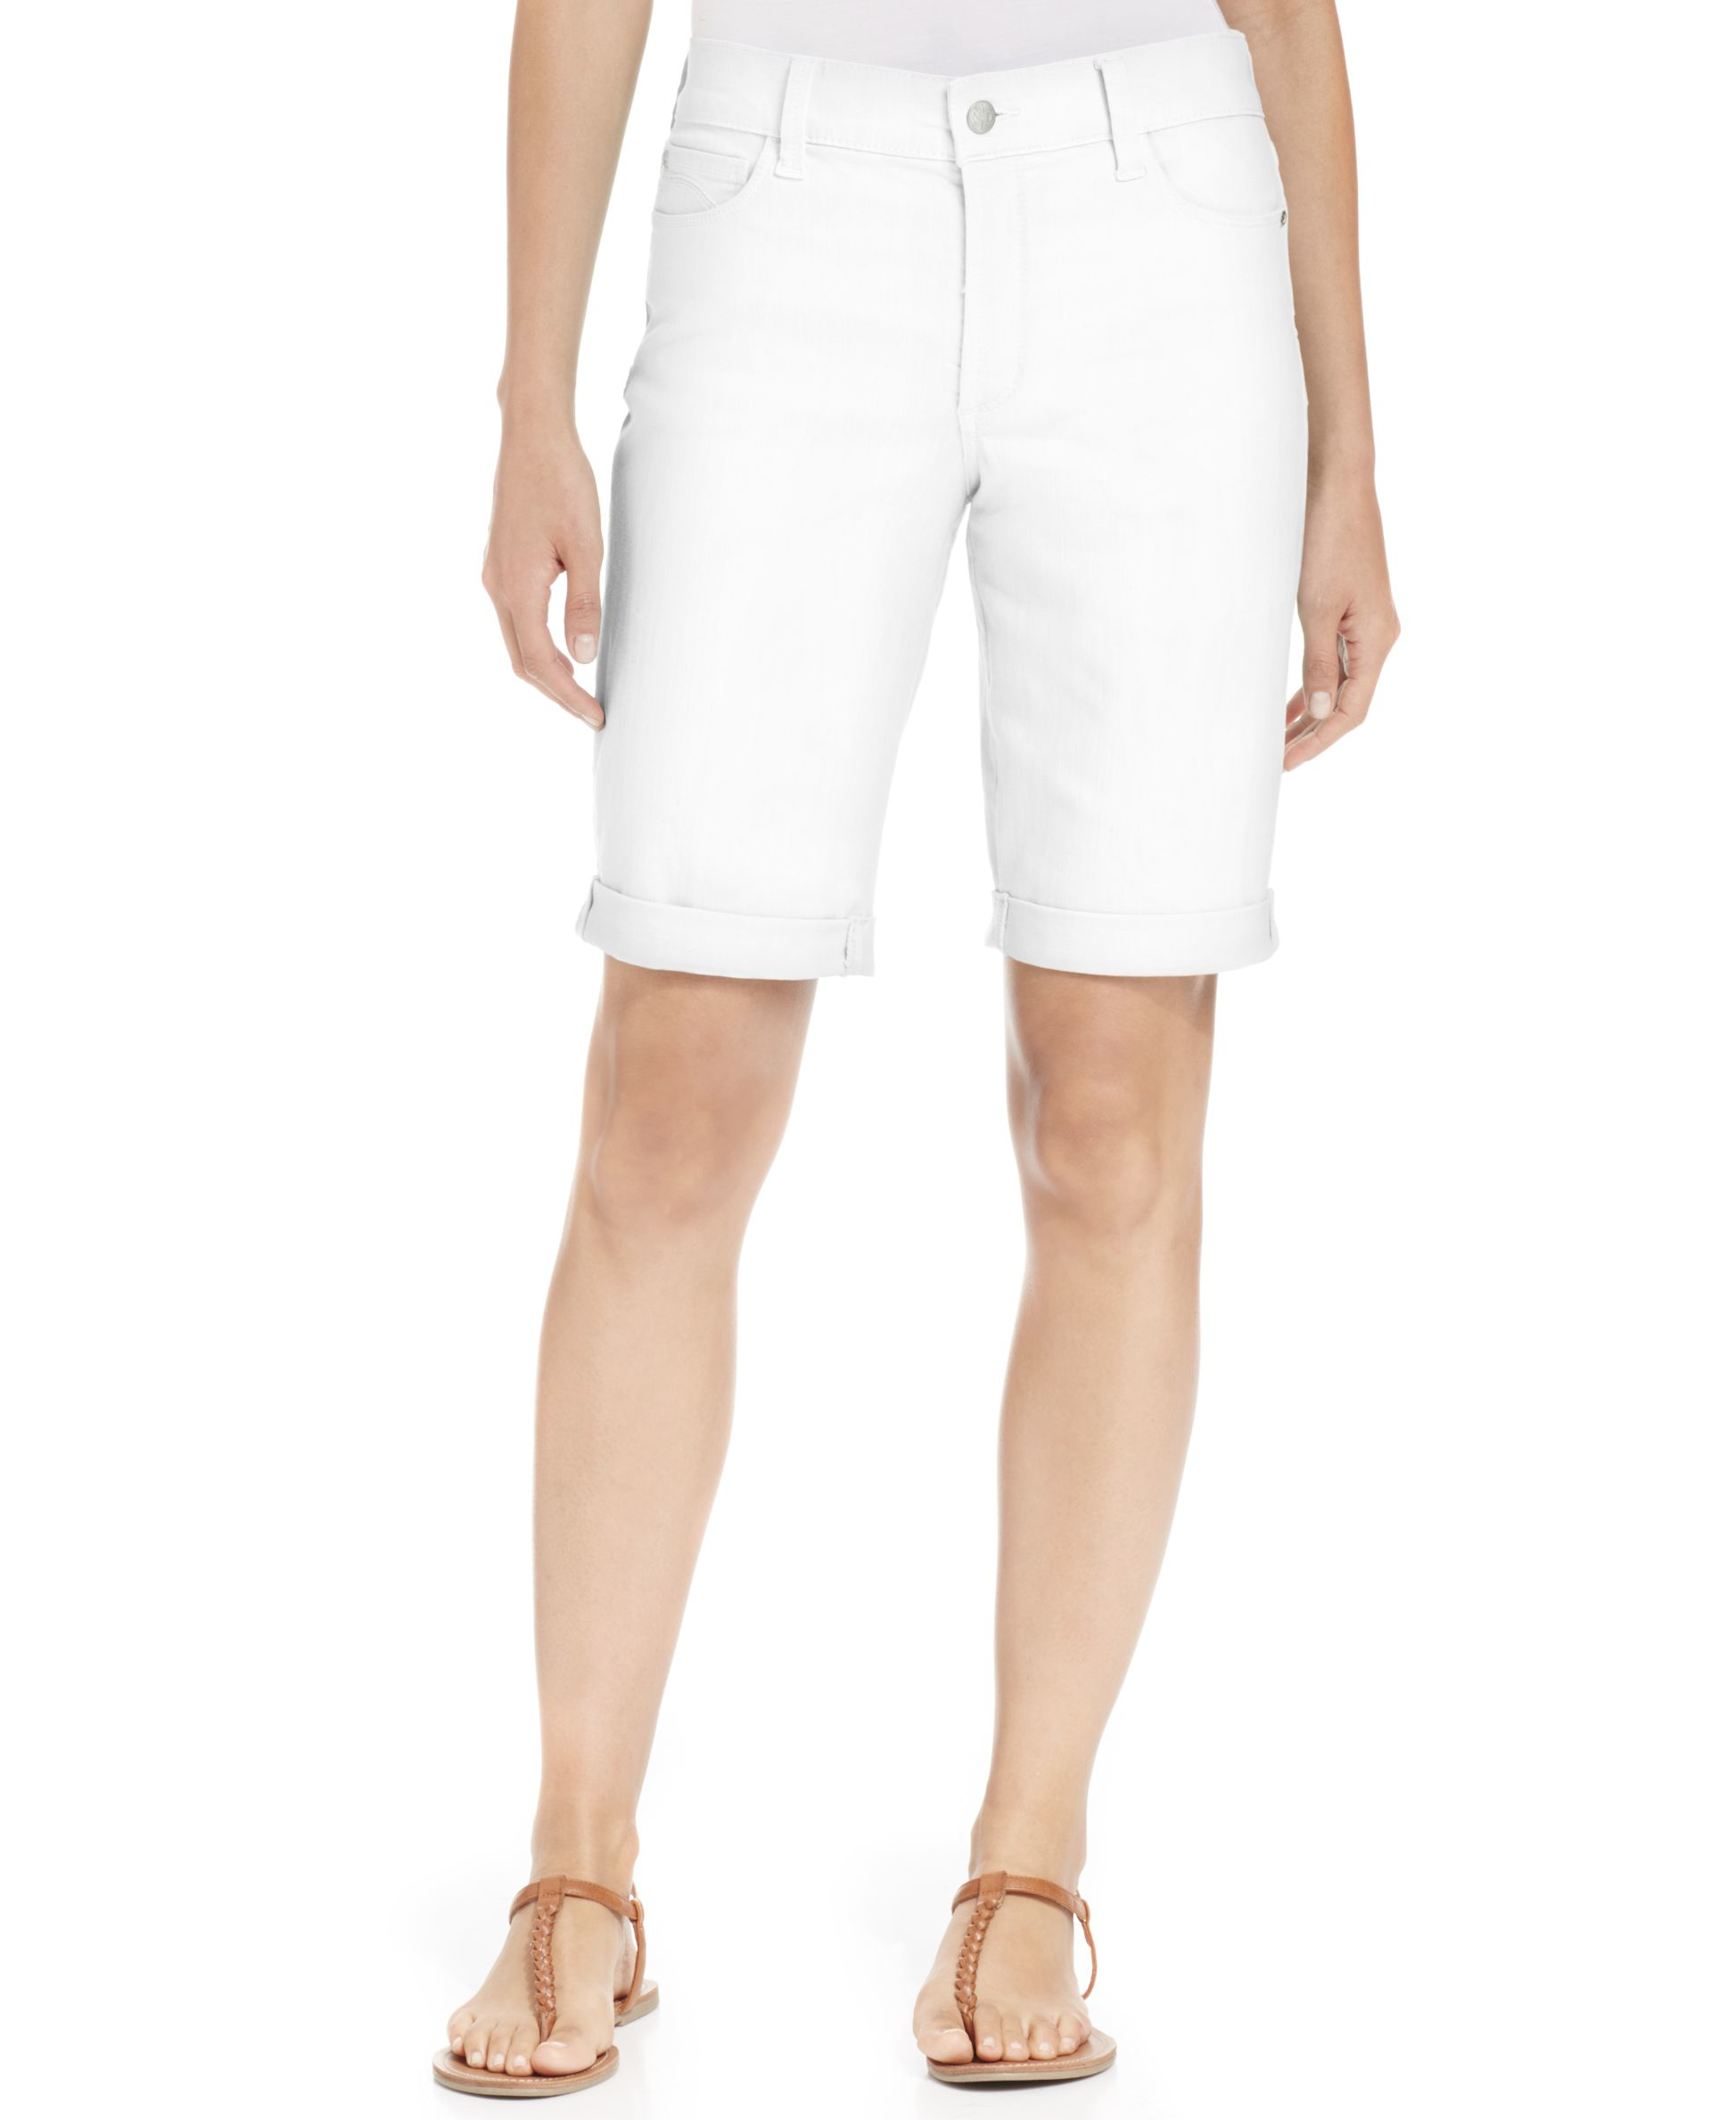 Lyst - NYDJ Petite Cuffed-hem Denim Shorts in White